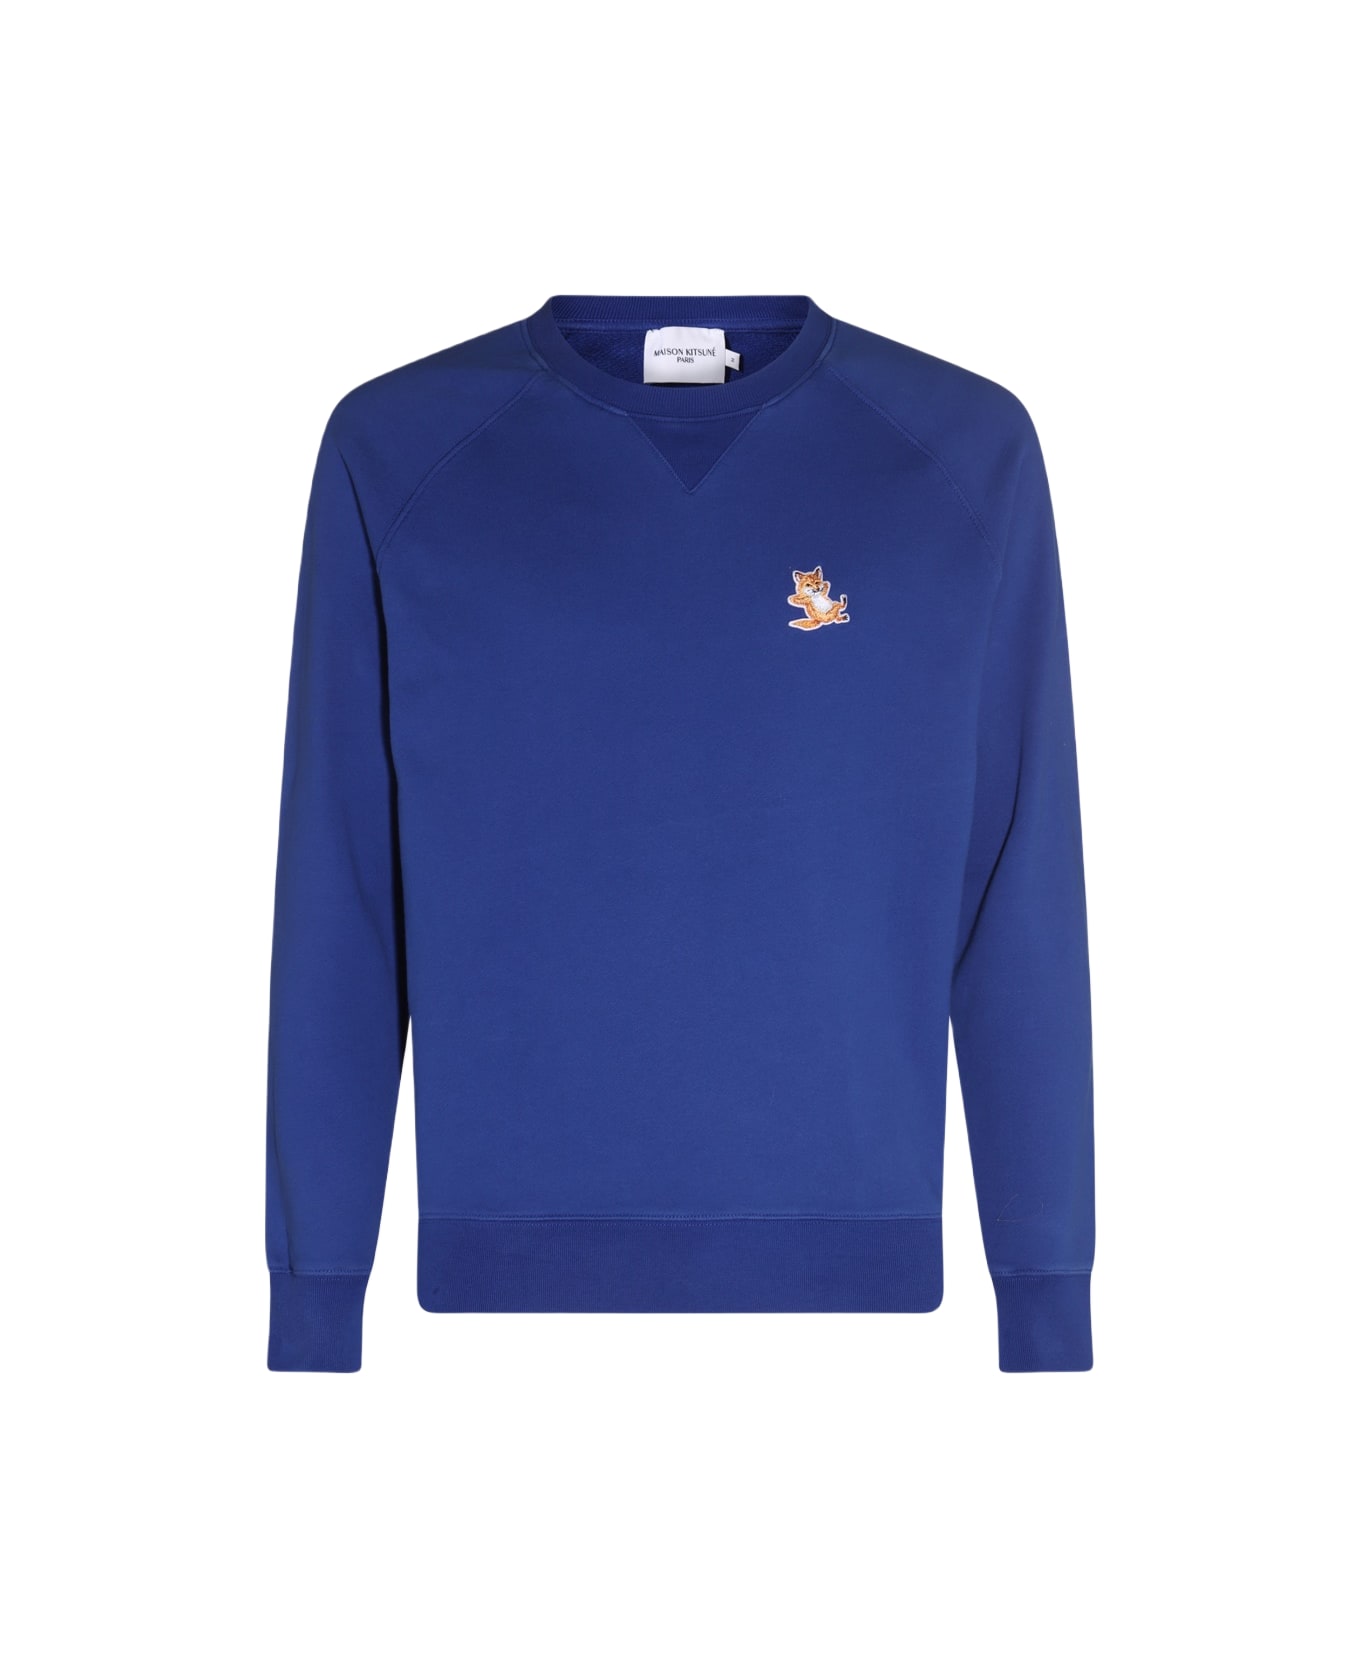 Maison Kitsuné Deep Blue Cotton Sweatshirt - DEEP BLUE